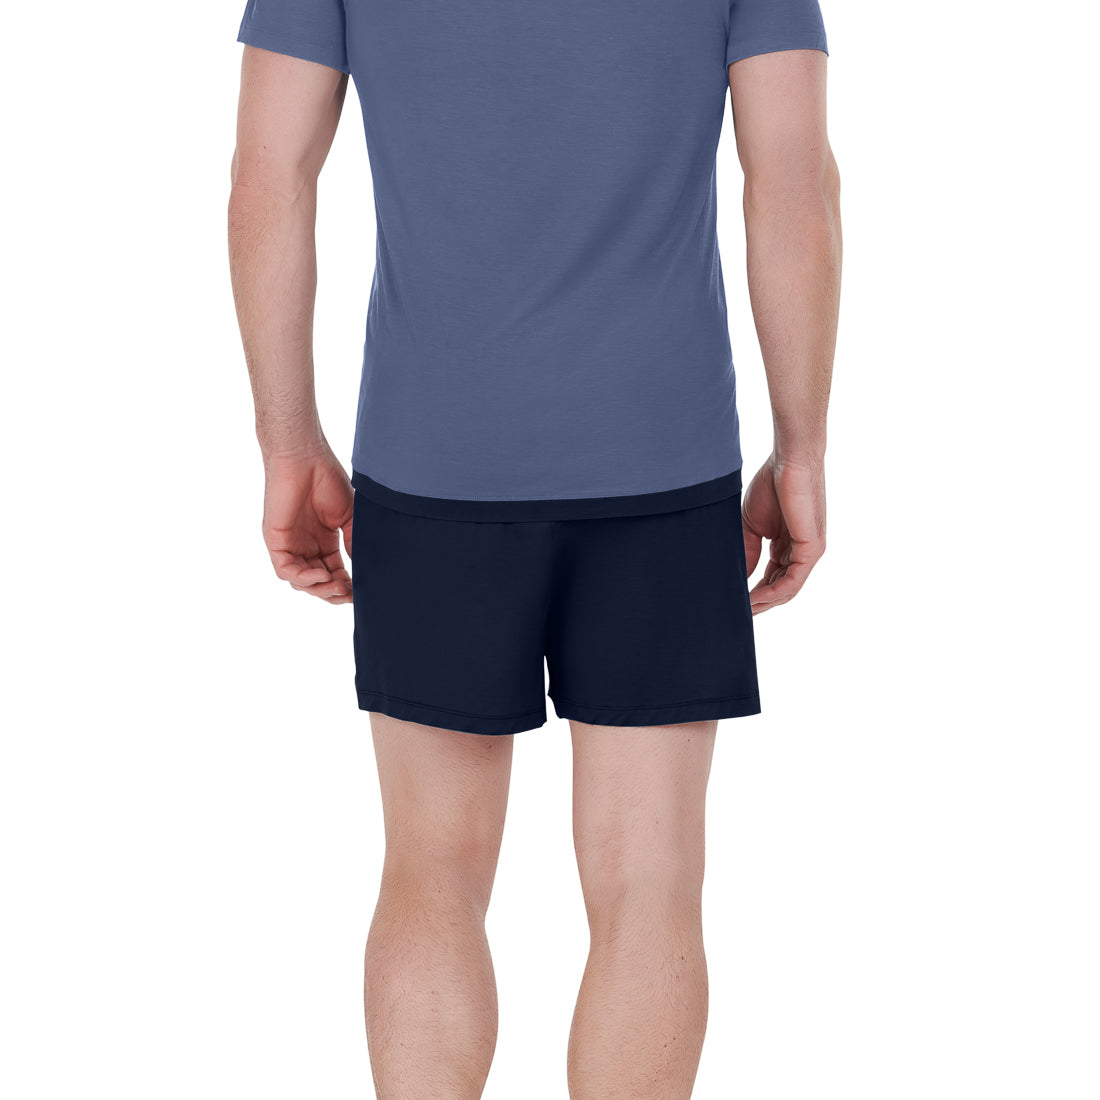 Cooling sleepwear men || Navy blue